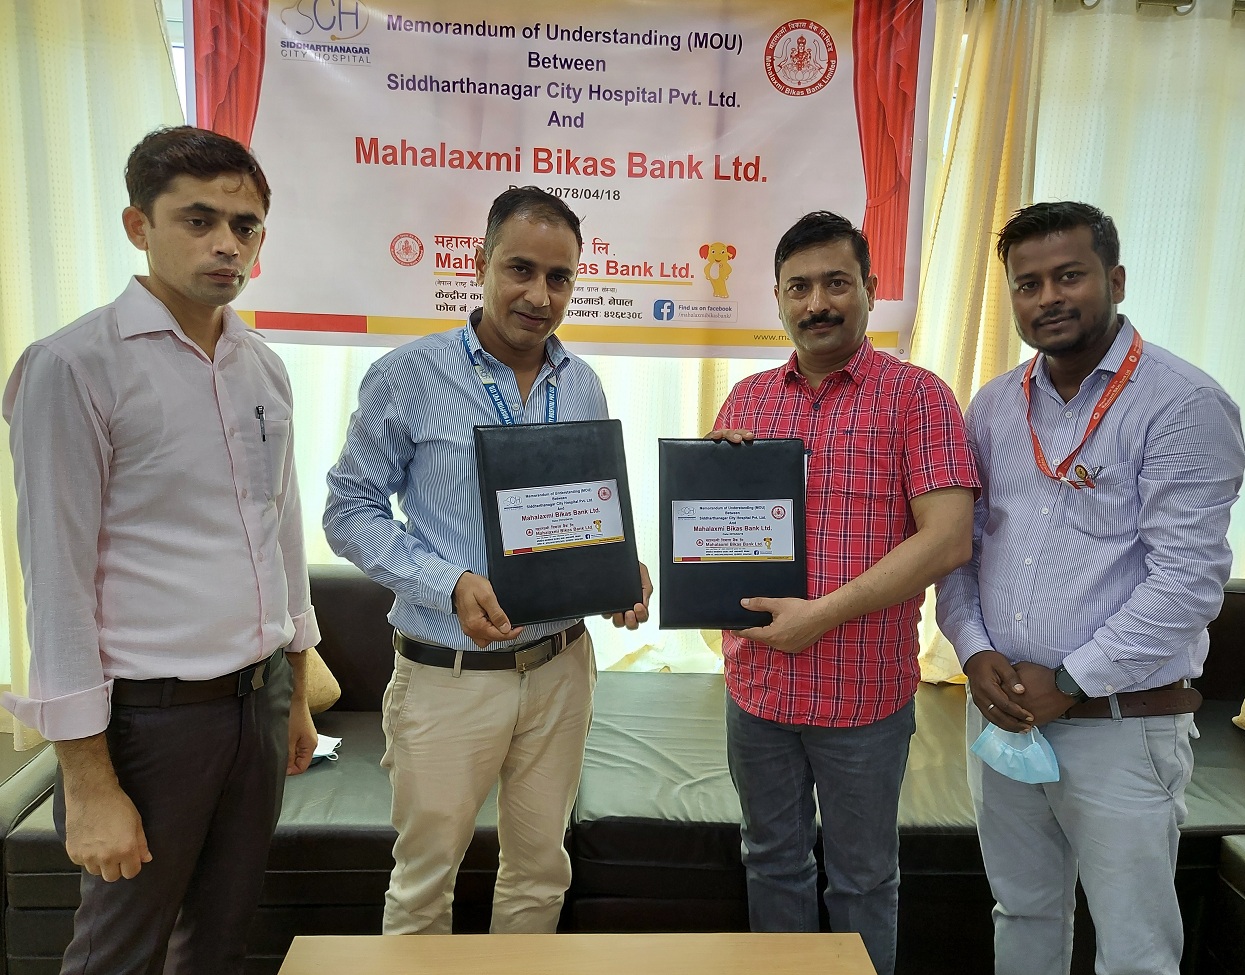 Agreement between Mahalaxmi Bikas Bank and Siddharthnagar City Hospital